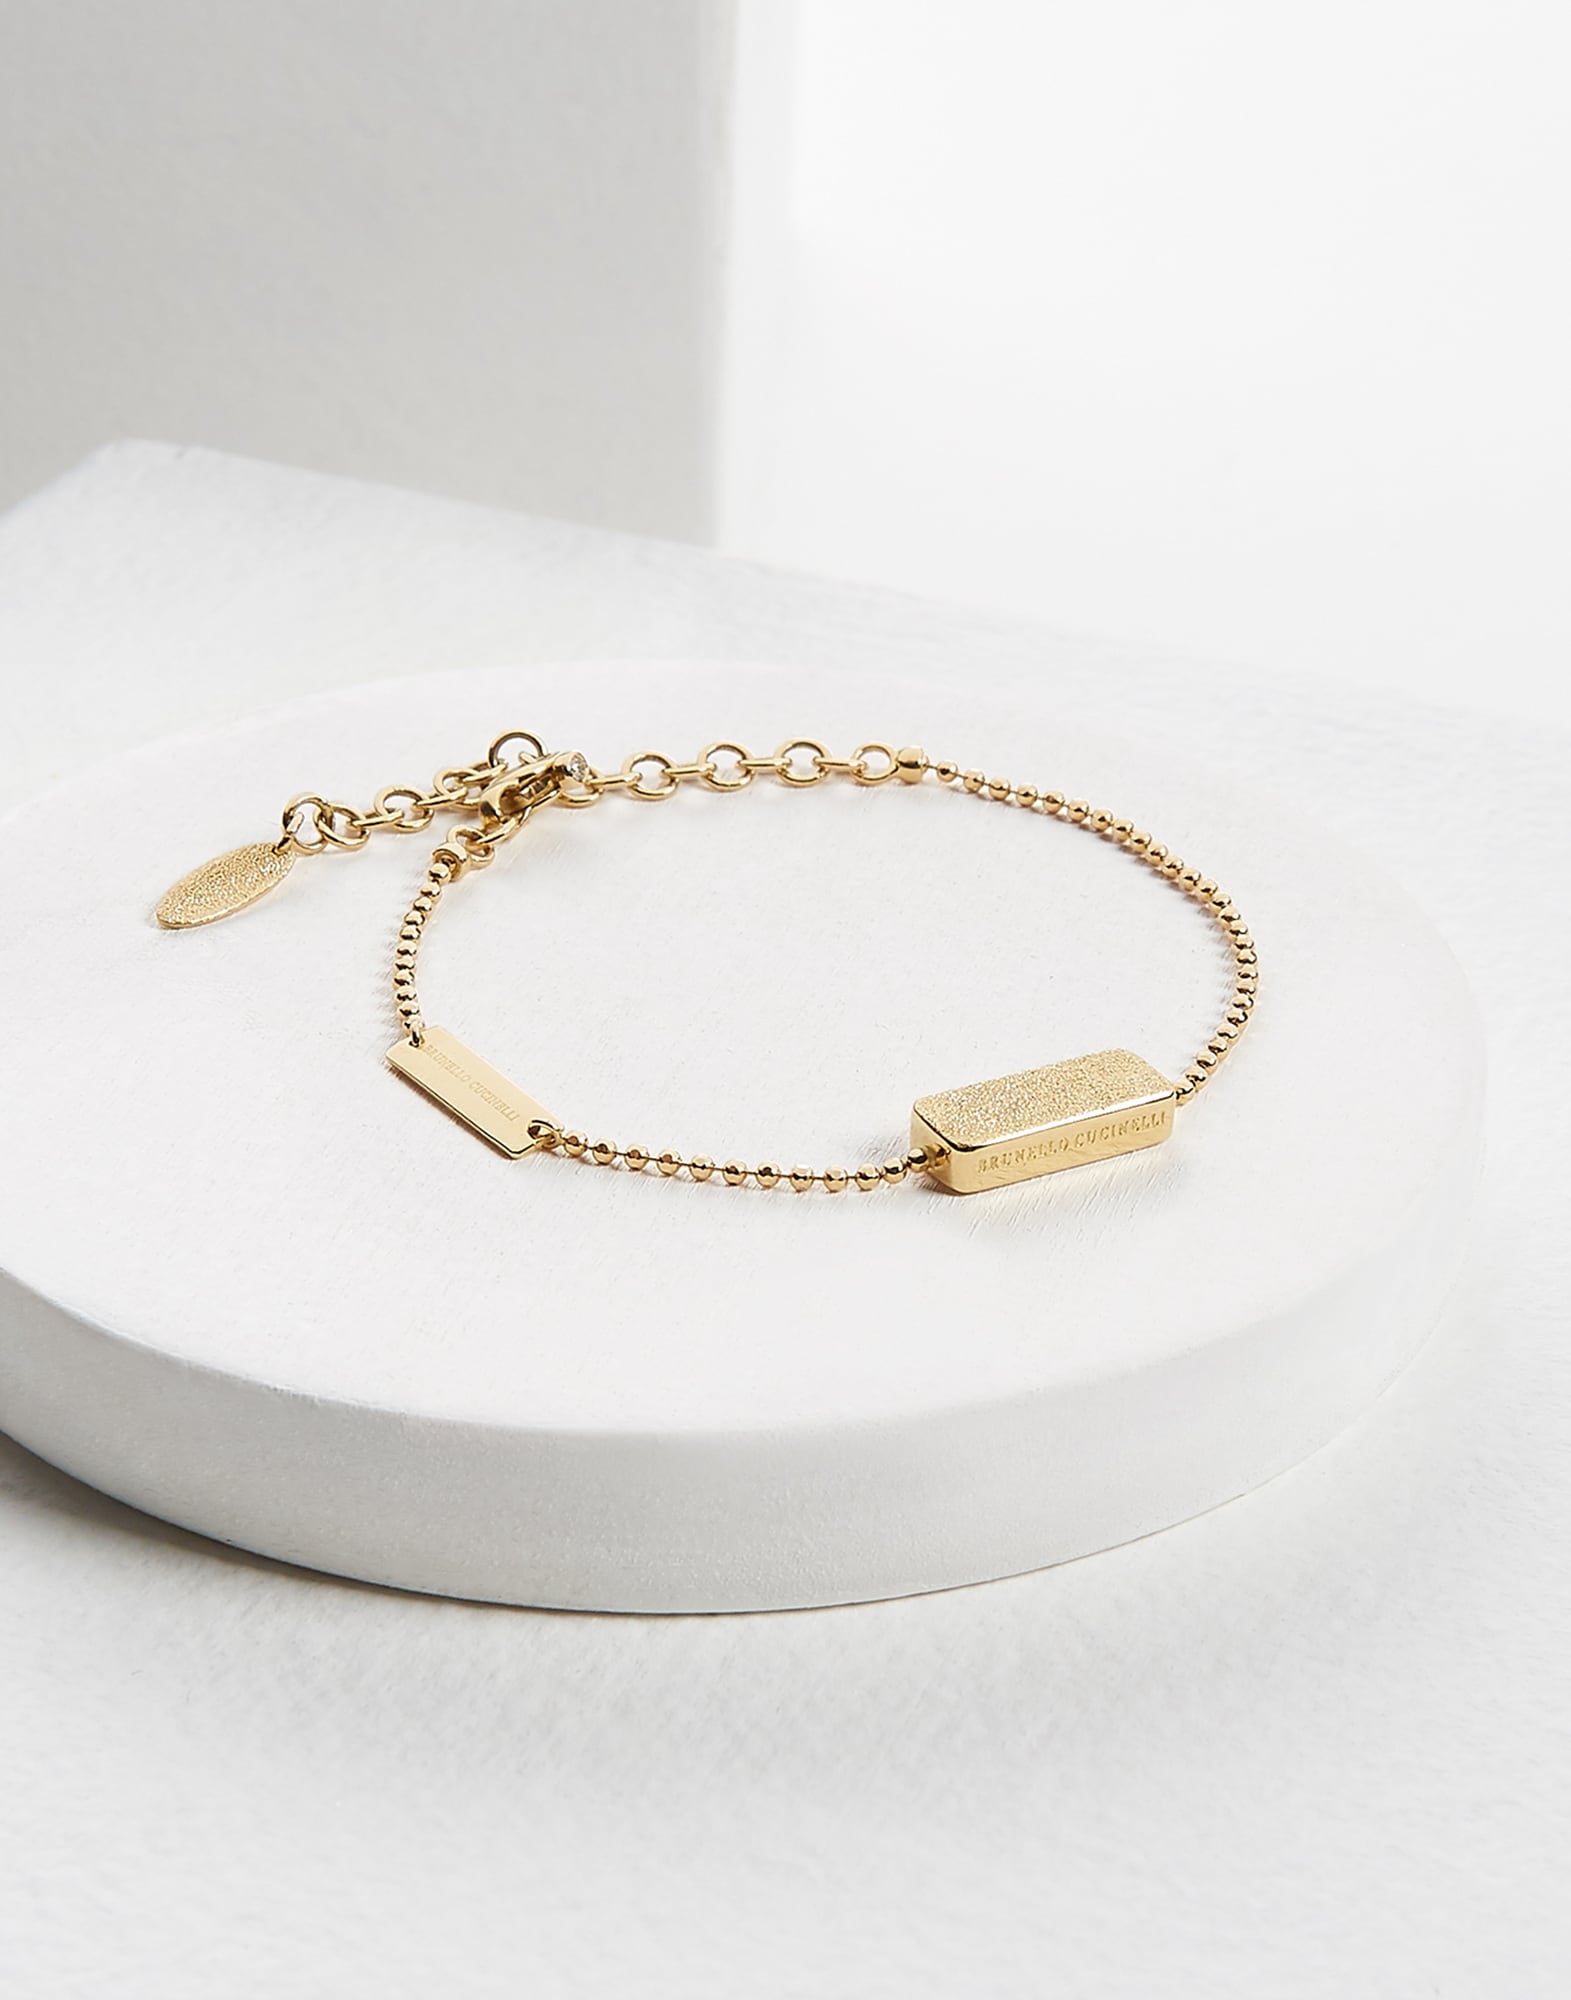 18K Gold bracelet with Diamond